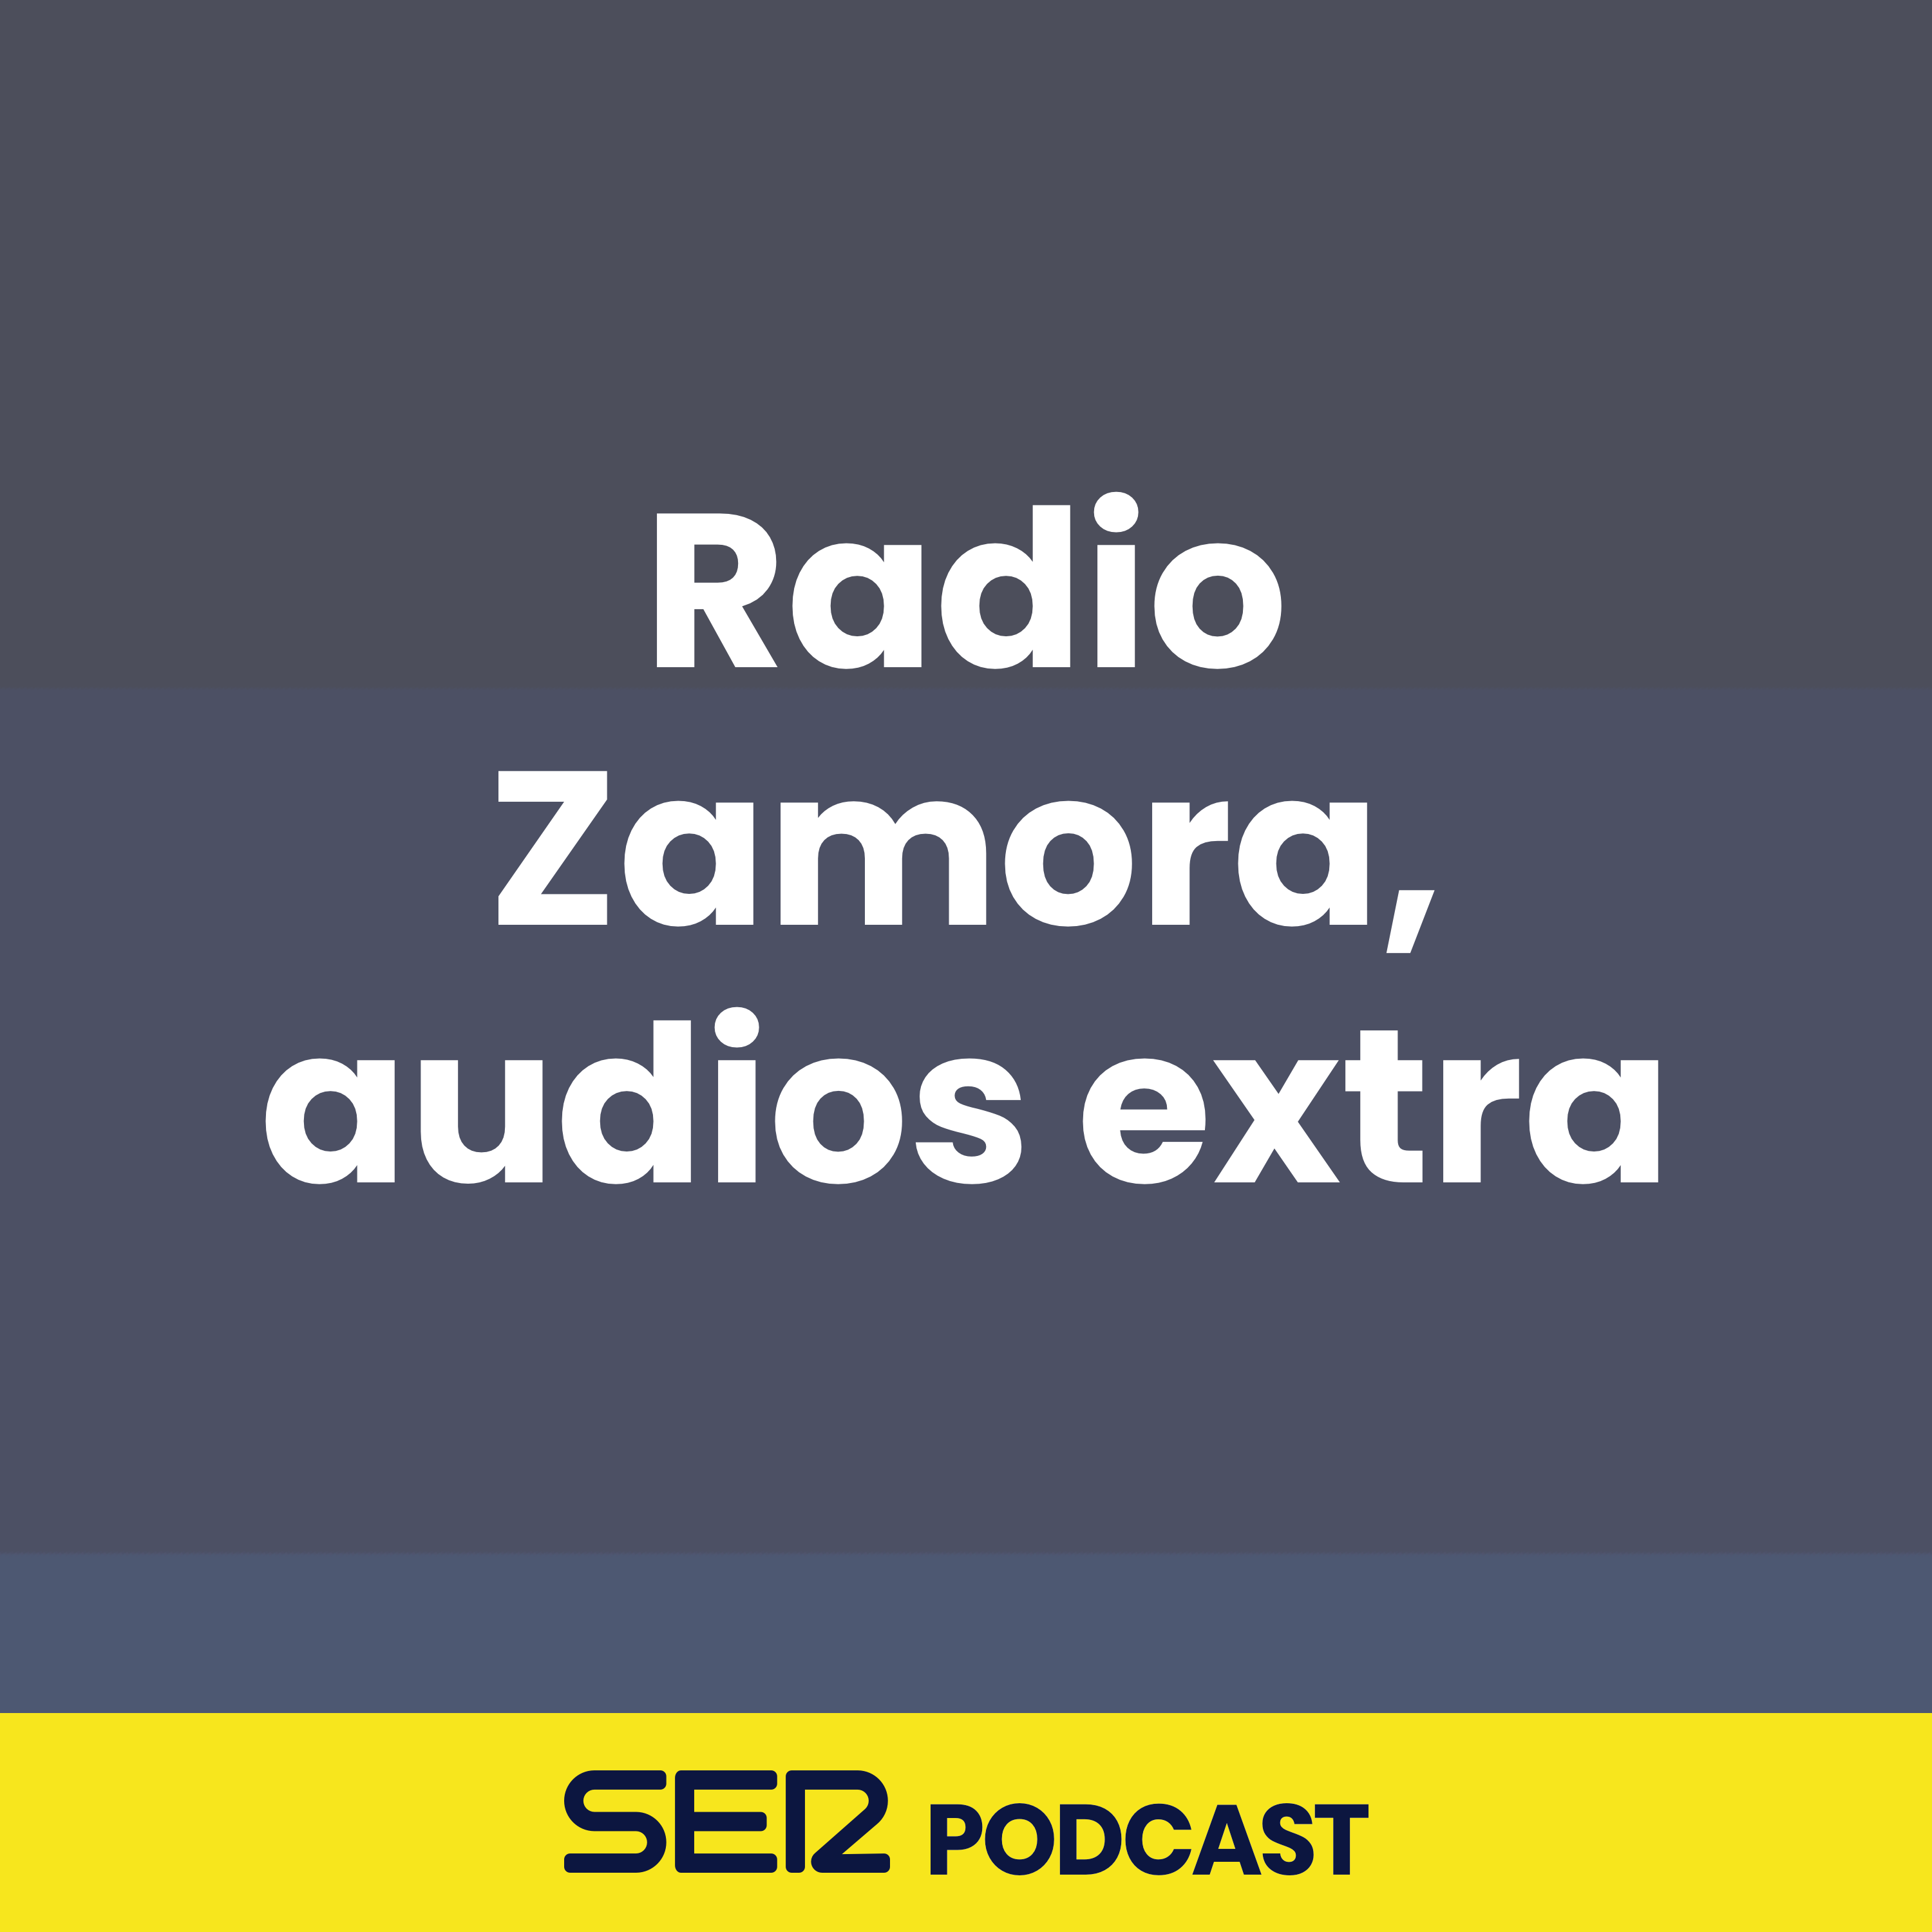 Radio Zamora, audios extra